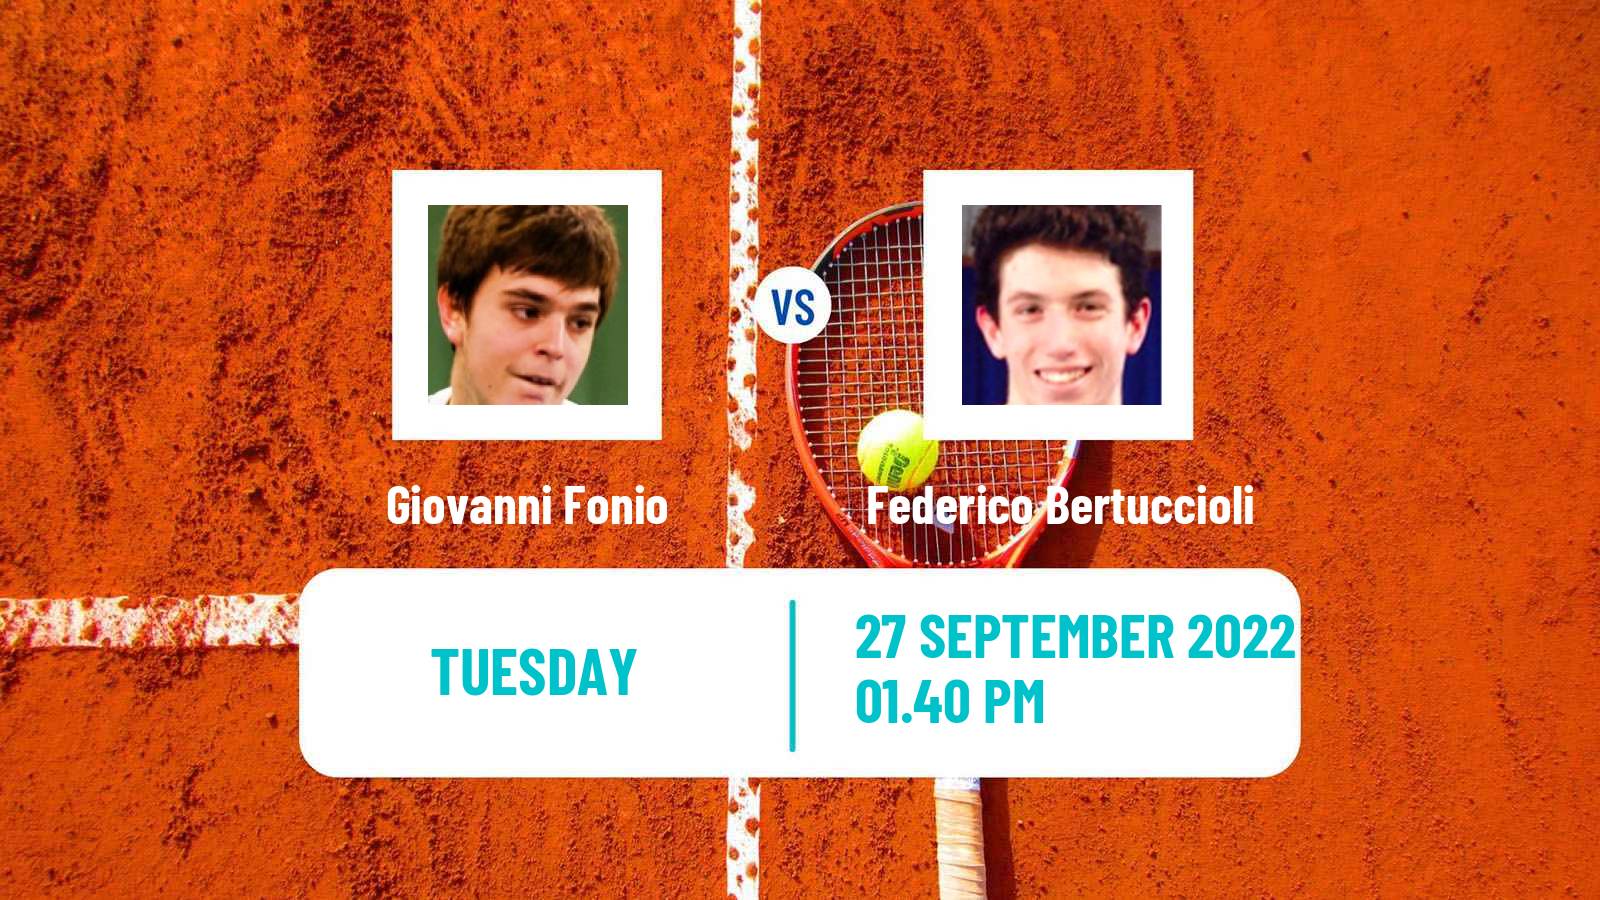 Tennis ITF Tournaments Giovanni Fonio - Federico Bertuccioli